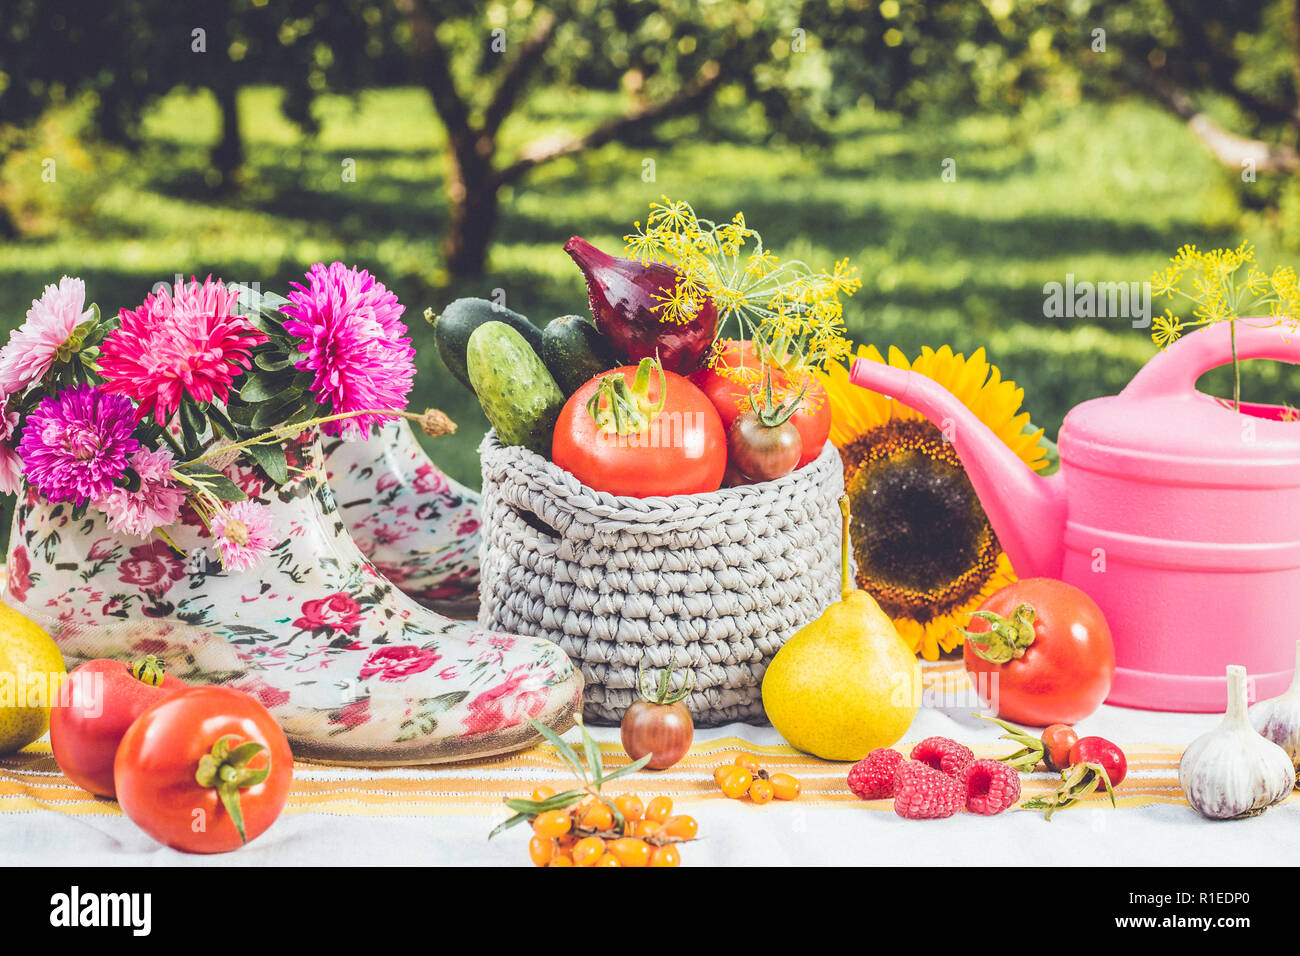 Saisonale Gartenarbeit eingestellt Hintergrund mit verschiedenen Herbst Obst, Gemüse Gärtner Tools, pink Gießkanne, weiß rosa blumenmuster Knöchel wellies, im Freien Stockfoto